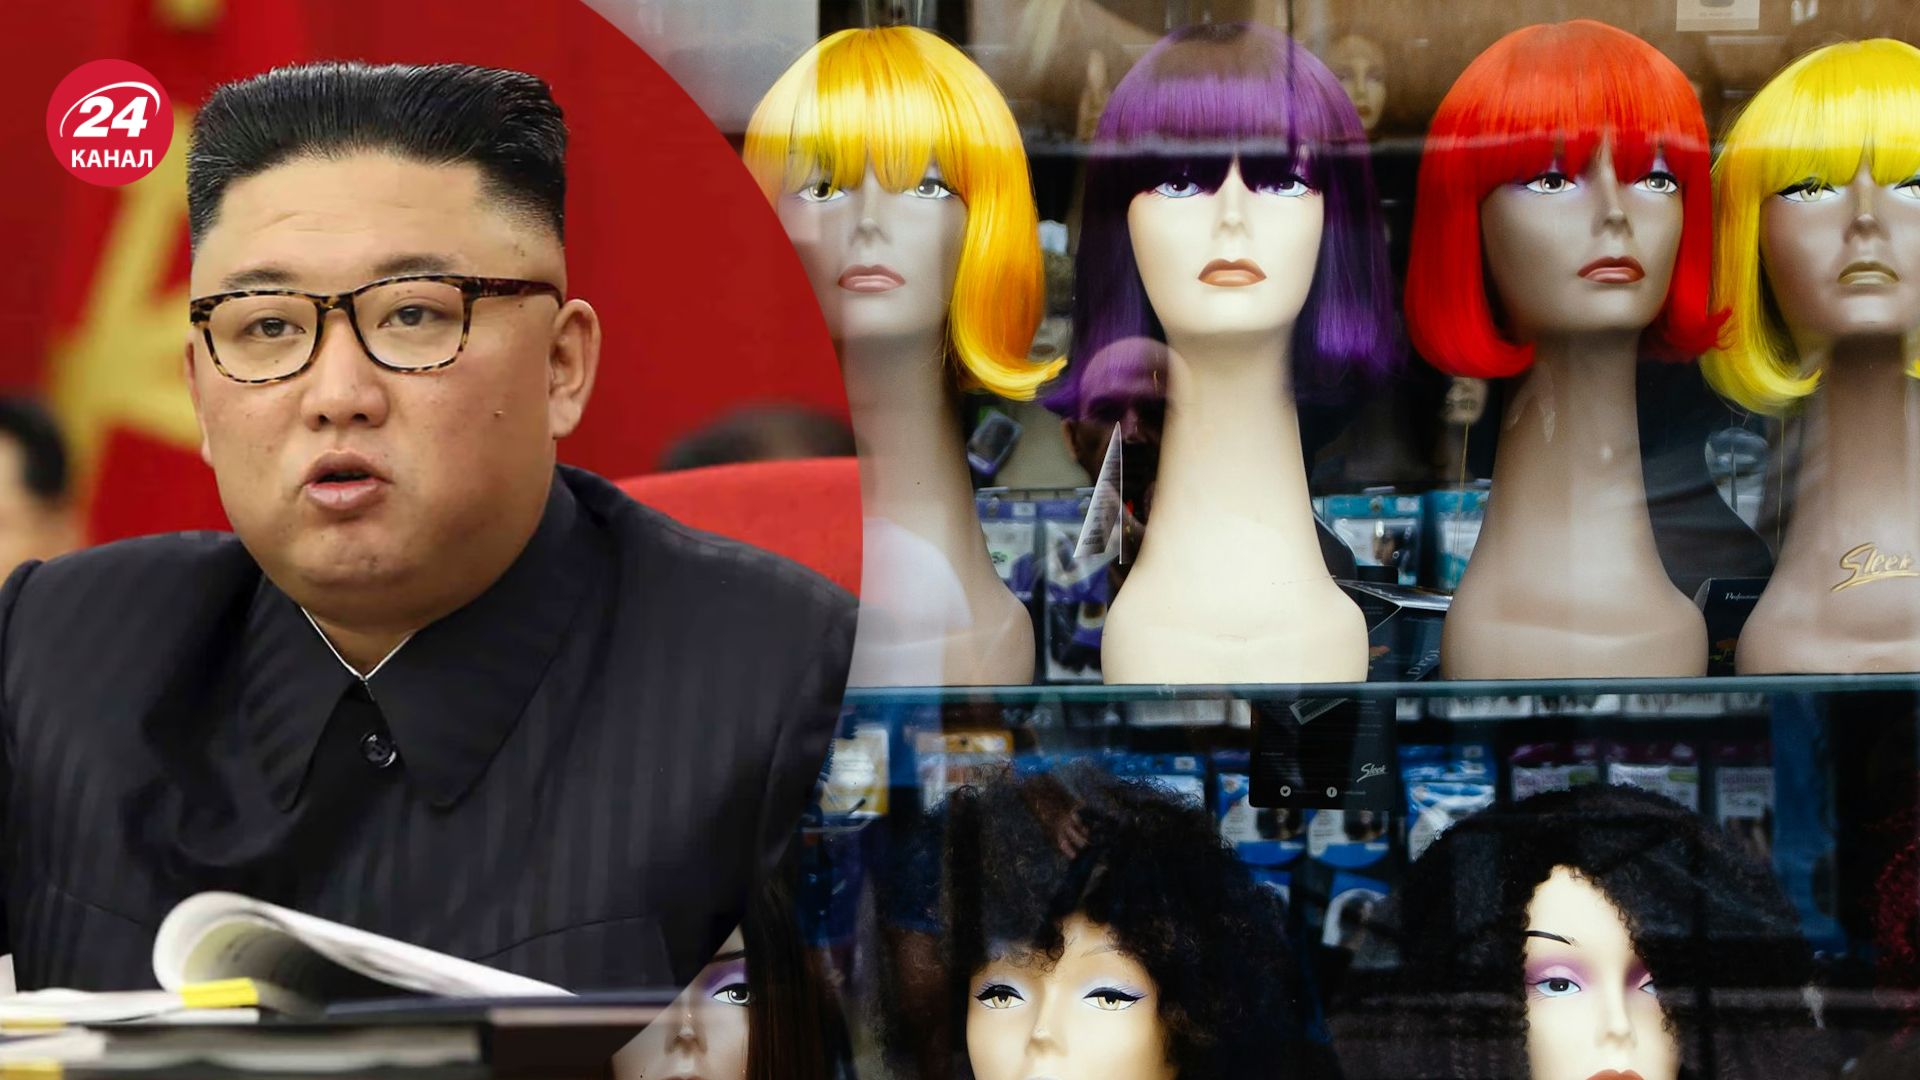 КНДР зарабатывает миллионы долларов на накладных ресницах и париках